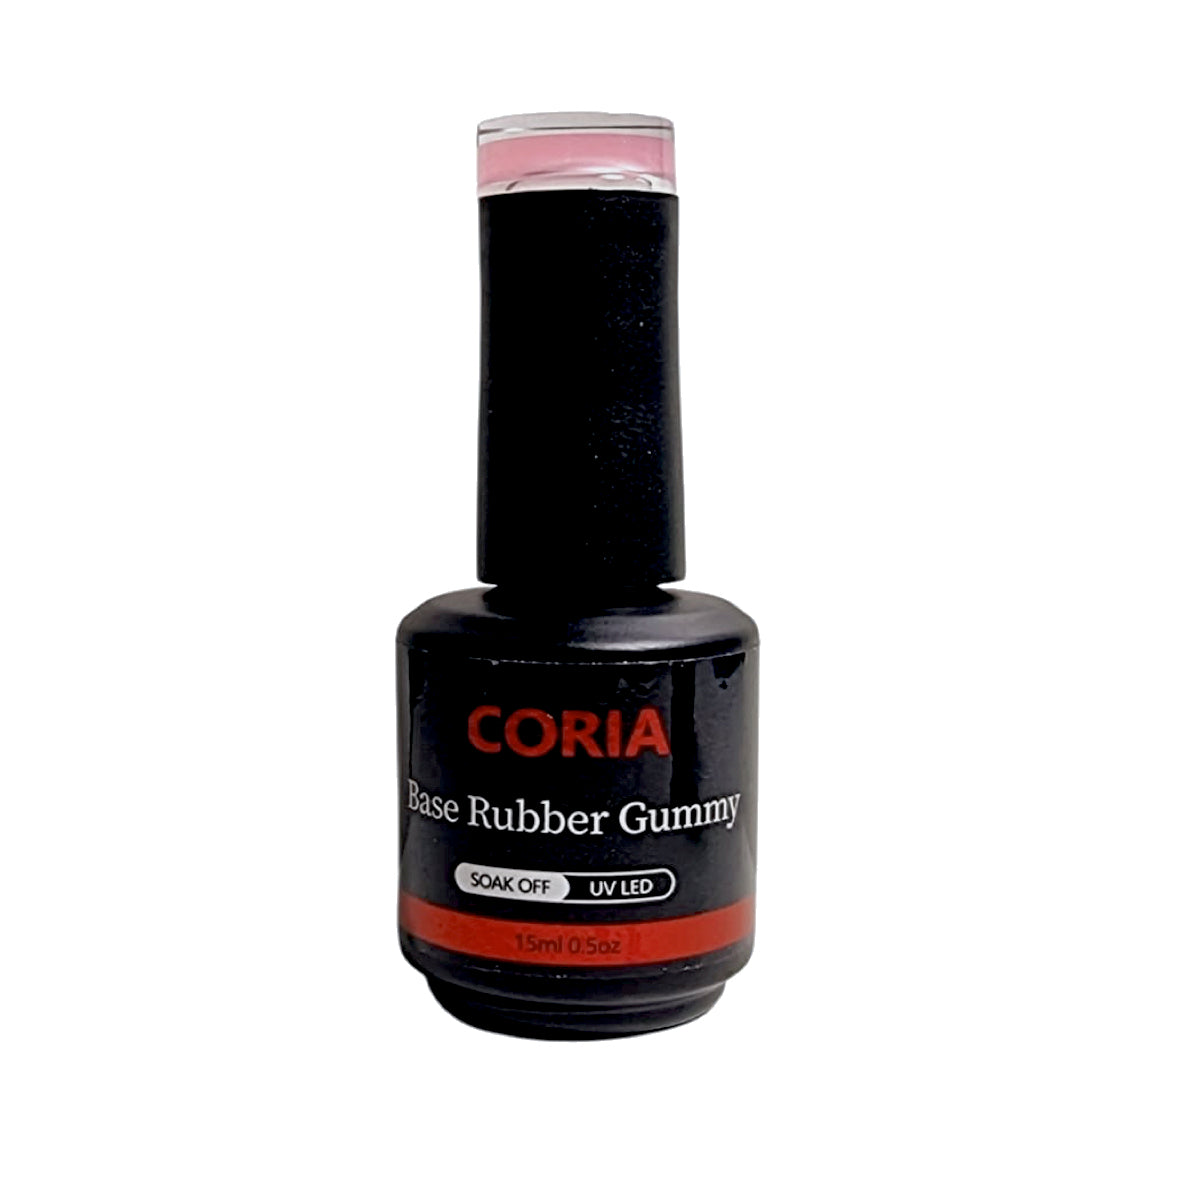 Baza Rubber Gummy Coria 054 Perfect French Nude 15 ml